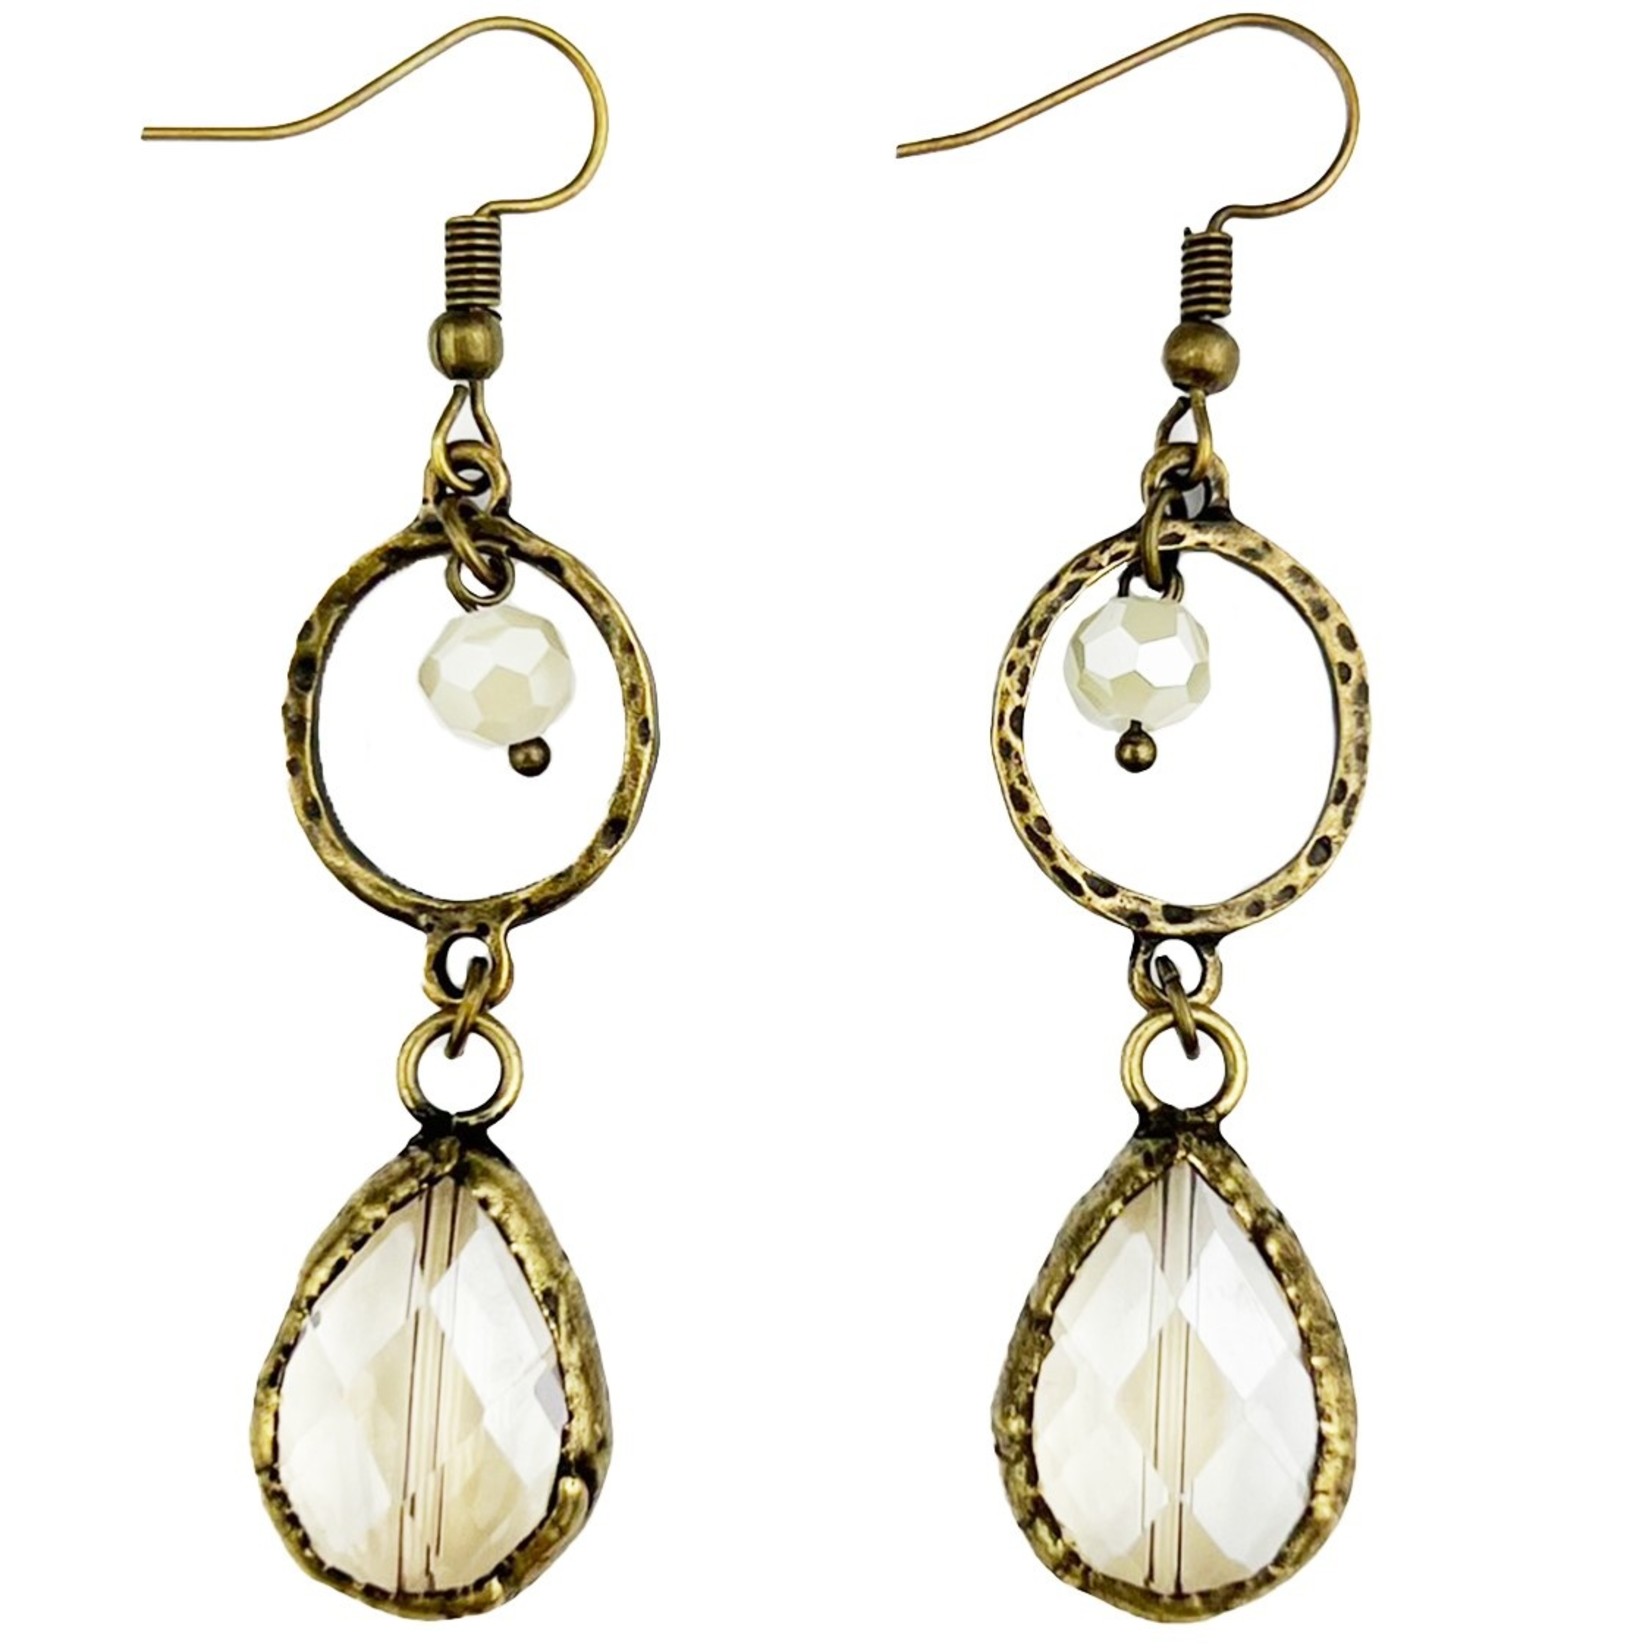 Crystal Earrings #178 3pcs/$3ea